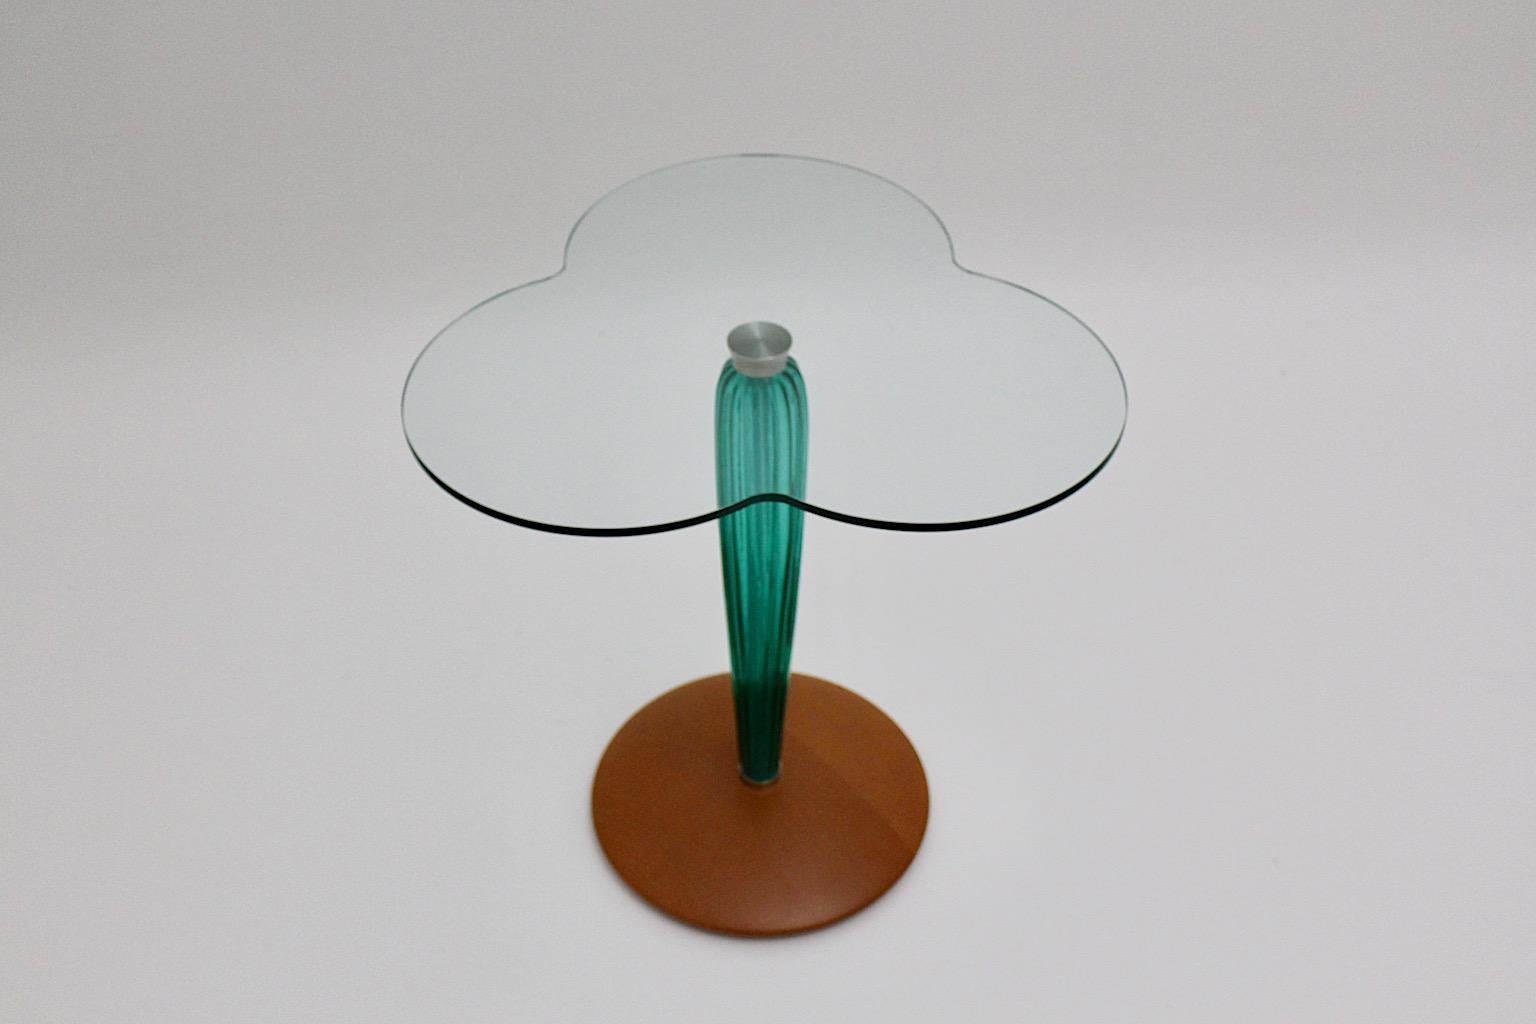 Beistelltisch aus grünem und klarem Glas, Seguso zugeschrieben, entworfen und ausgeführt in Italien um 1980.
Ein toller Beistelltisch aus Klarglas, Grünglas und Buche in einer schönen Kleeblattform. Der runde, scheibenförmige Fuß aus Buche zeigt